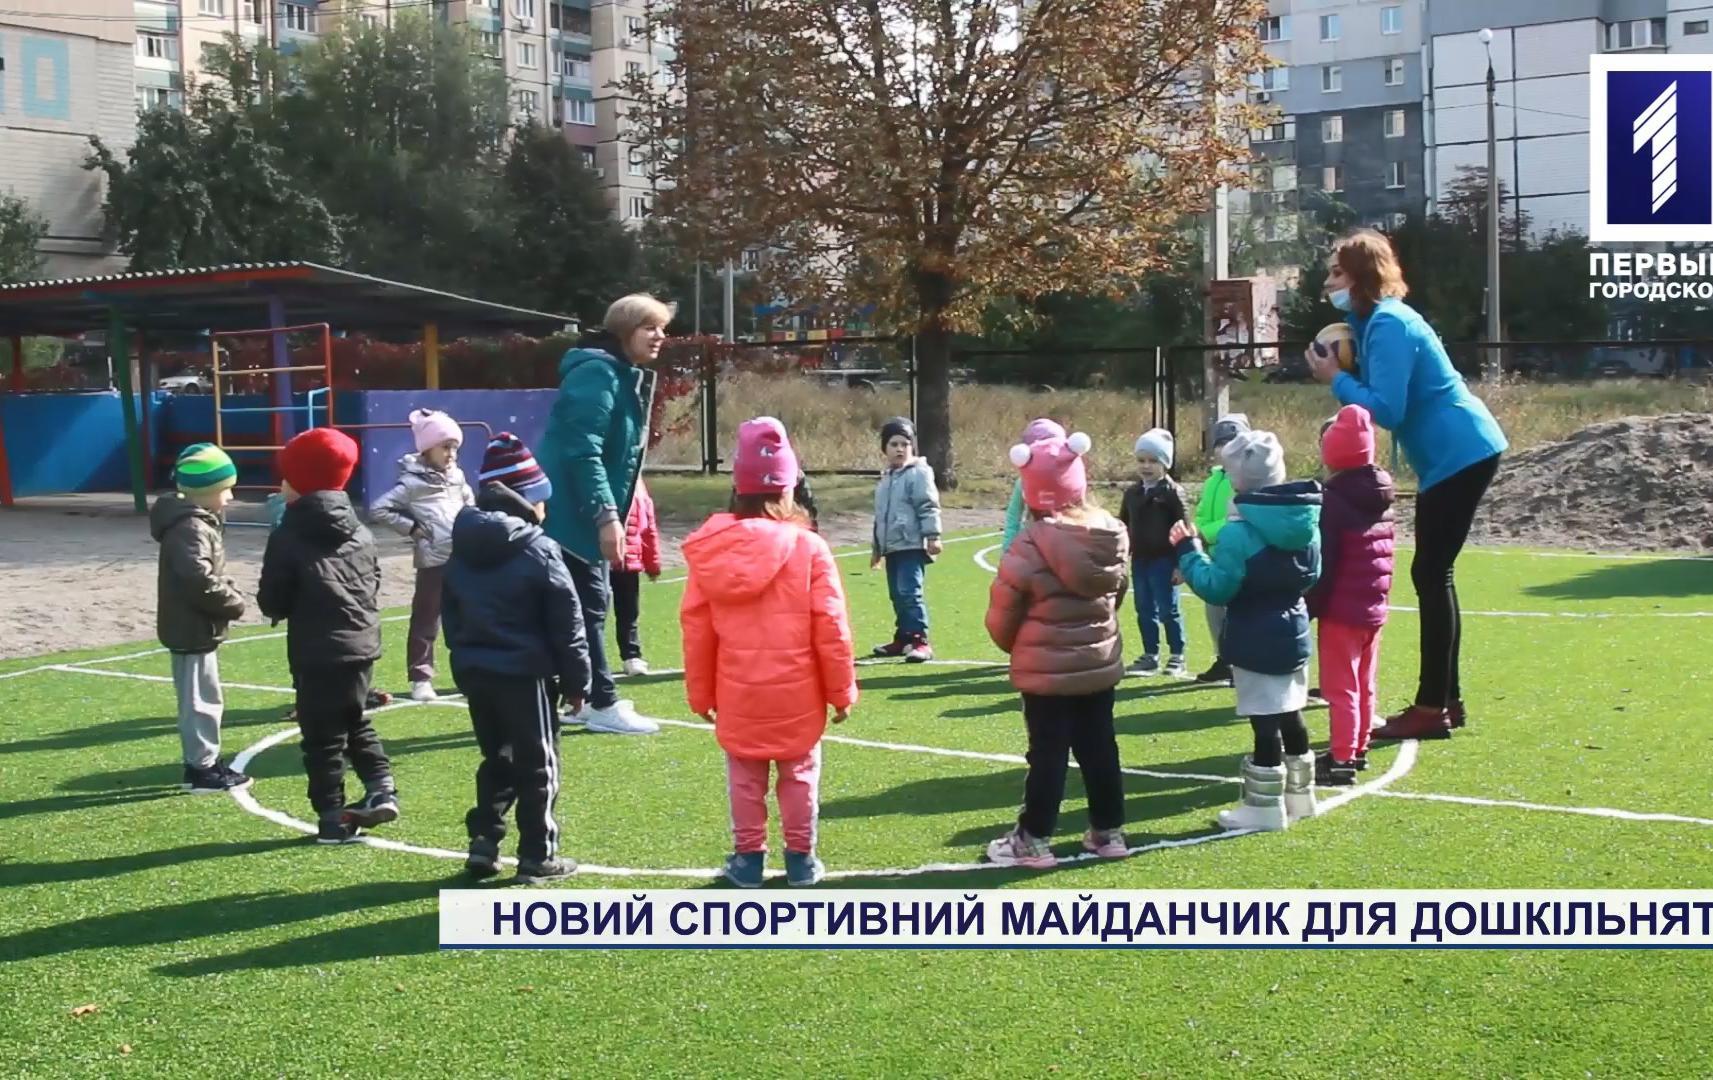 Новая спортивная площадка для дошкольников Кривого Рога